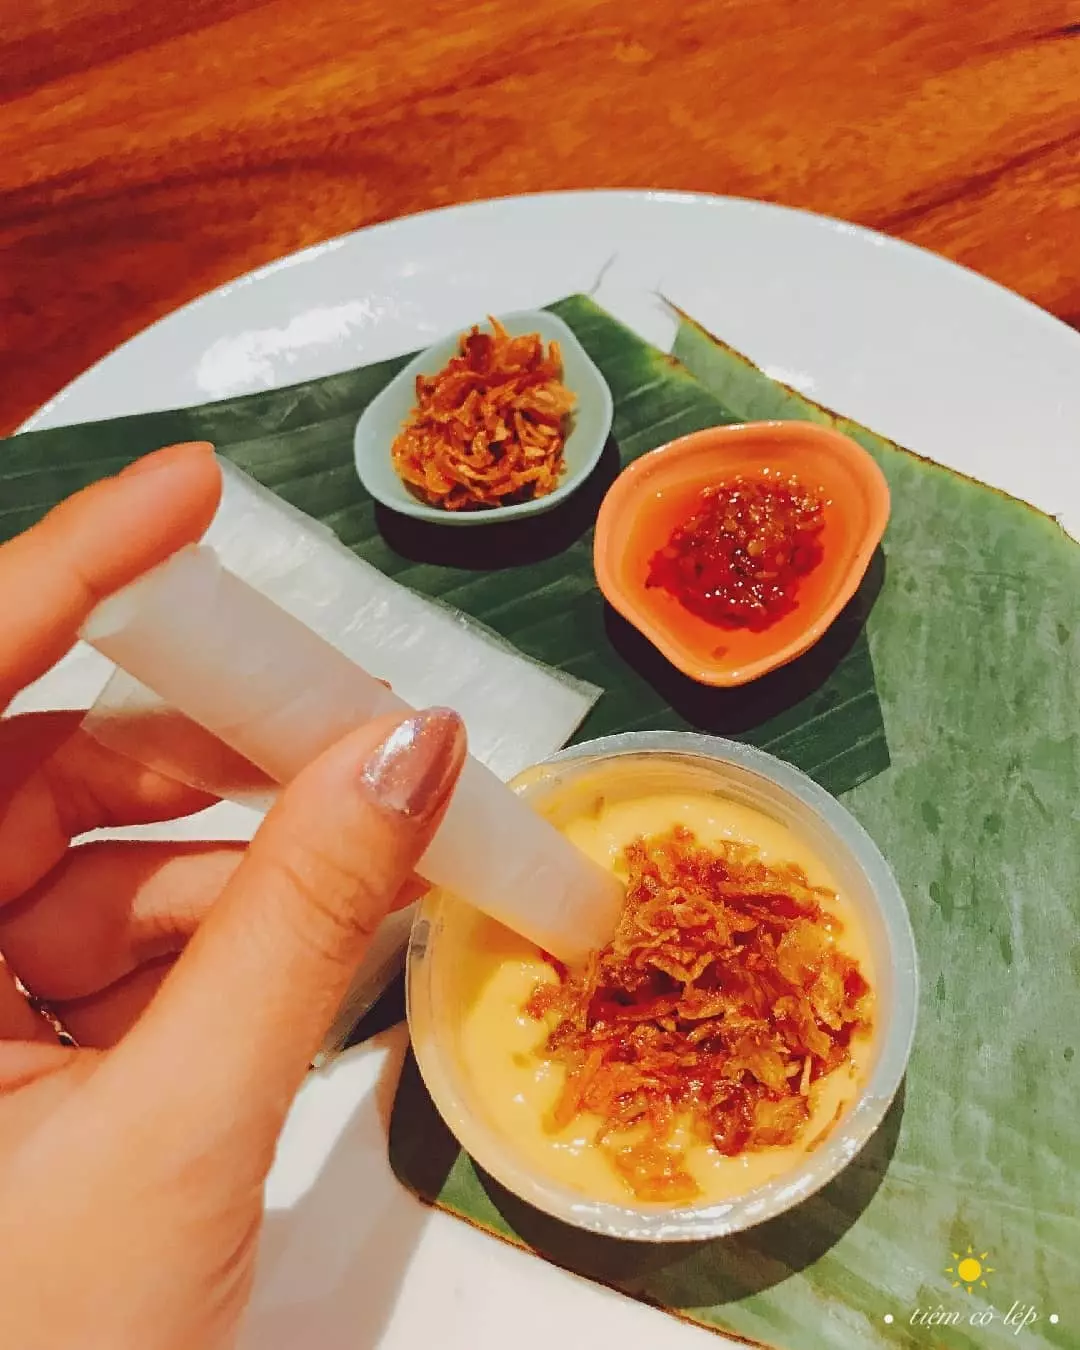 “Những món ngon không thể bỏ lỡ” - 9 đặc sản ẩm thực nổi tiếng Sài Gòn